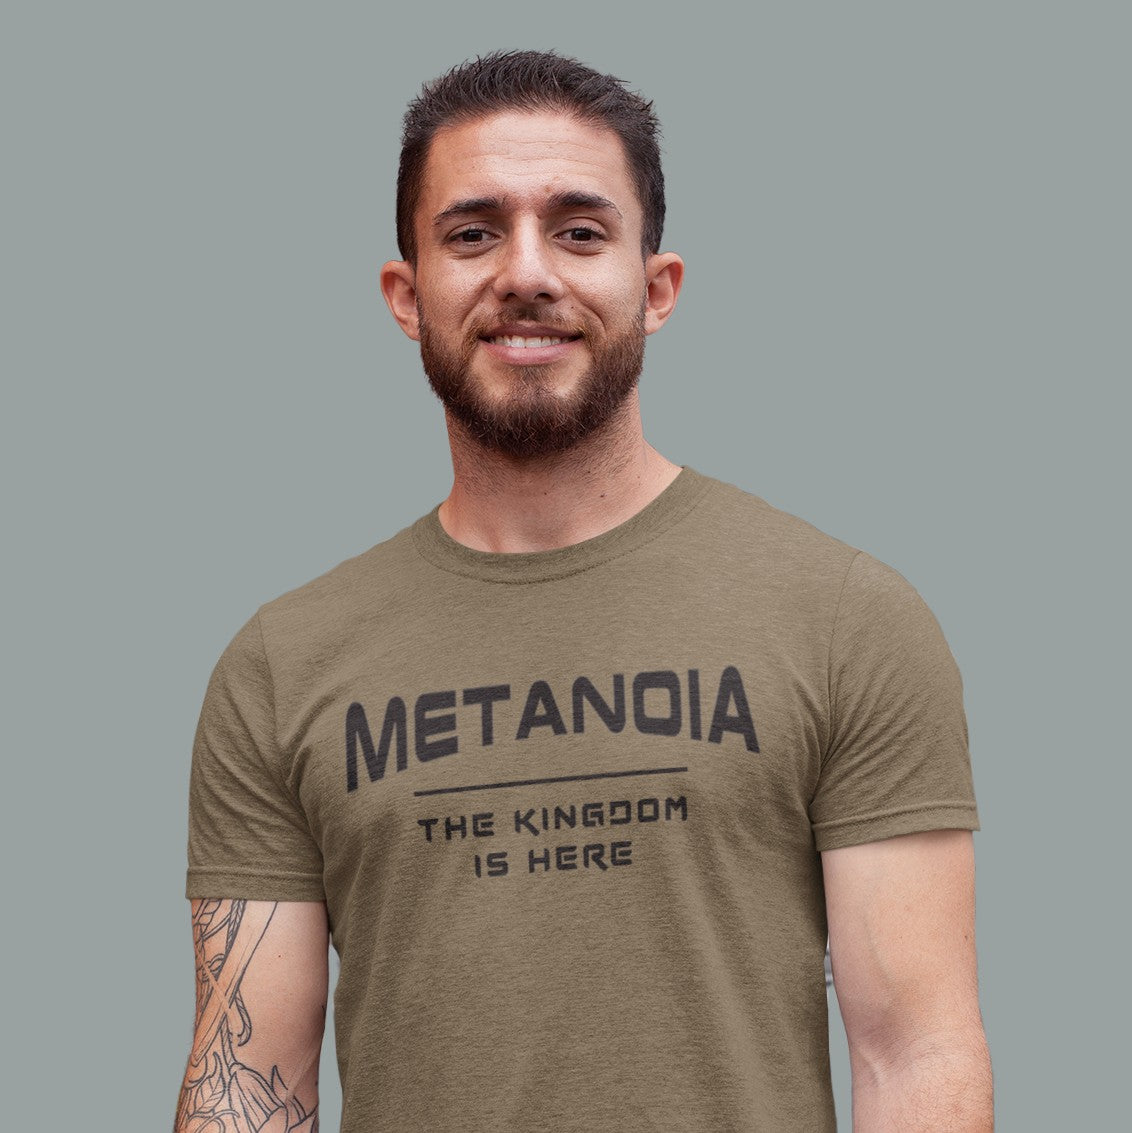 Buy Metanoia Online In India - Etsy India